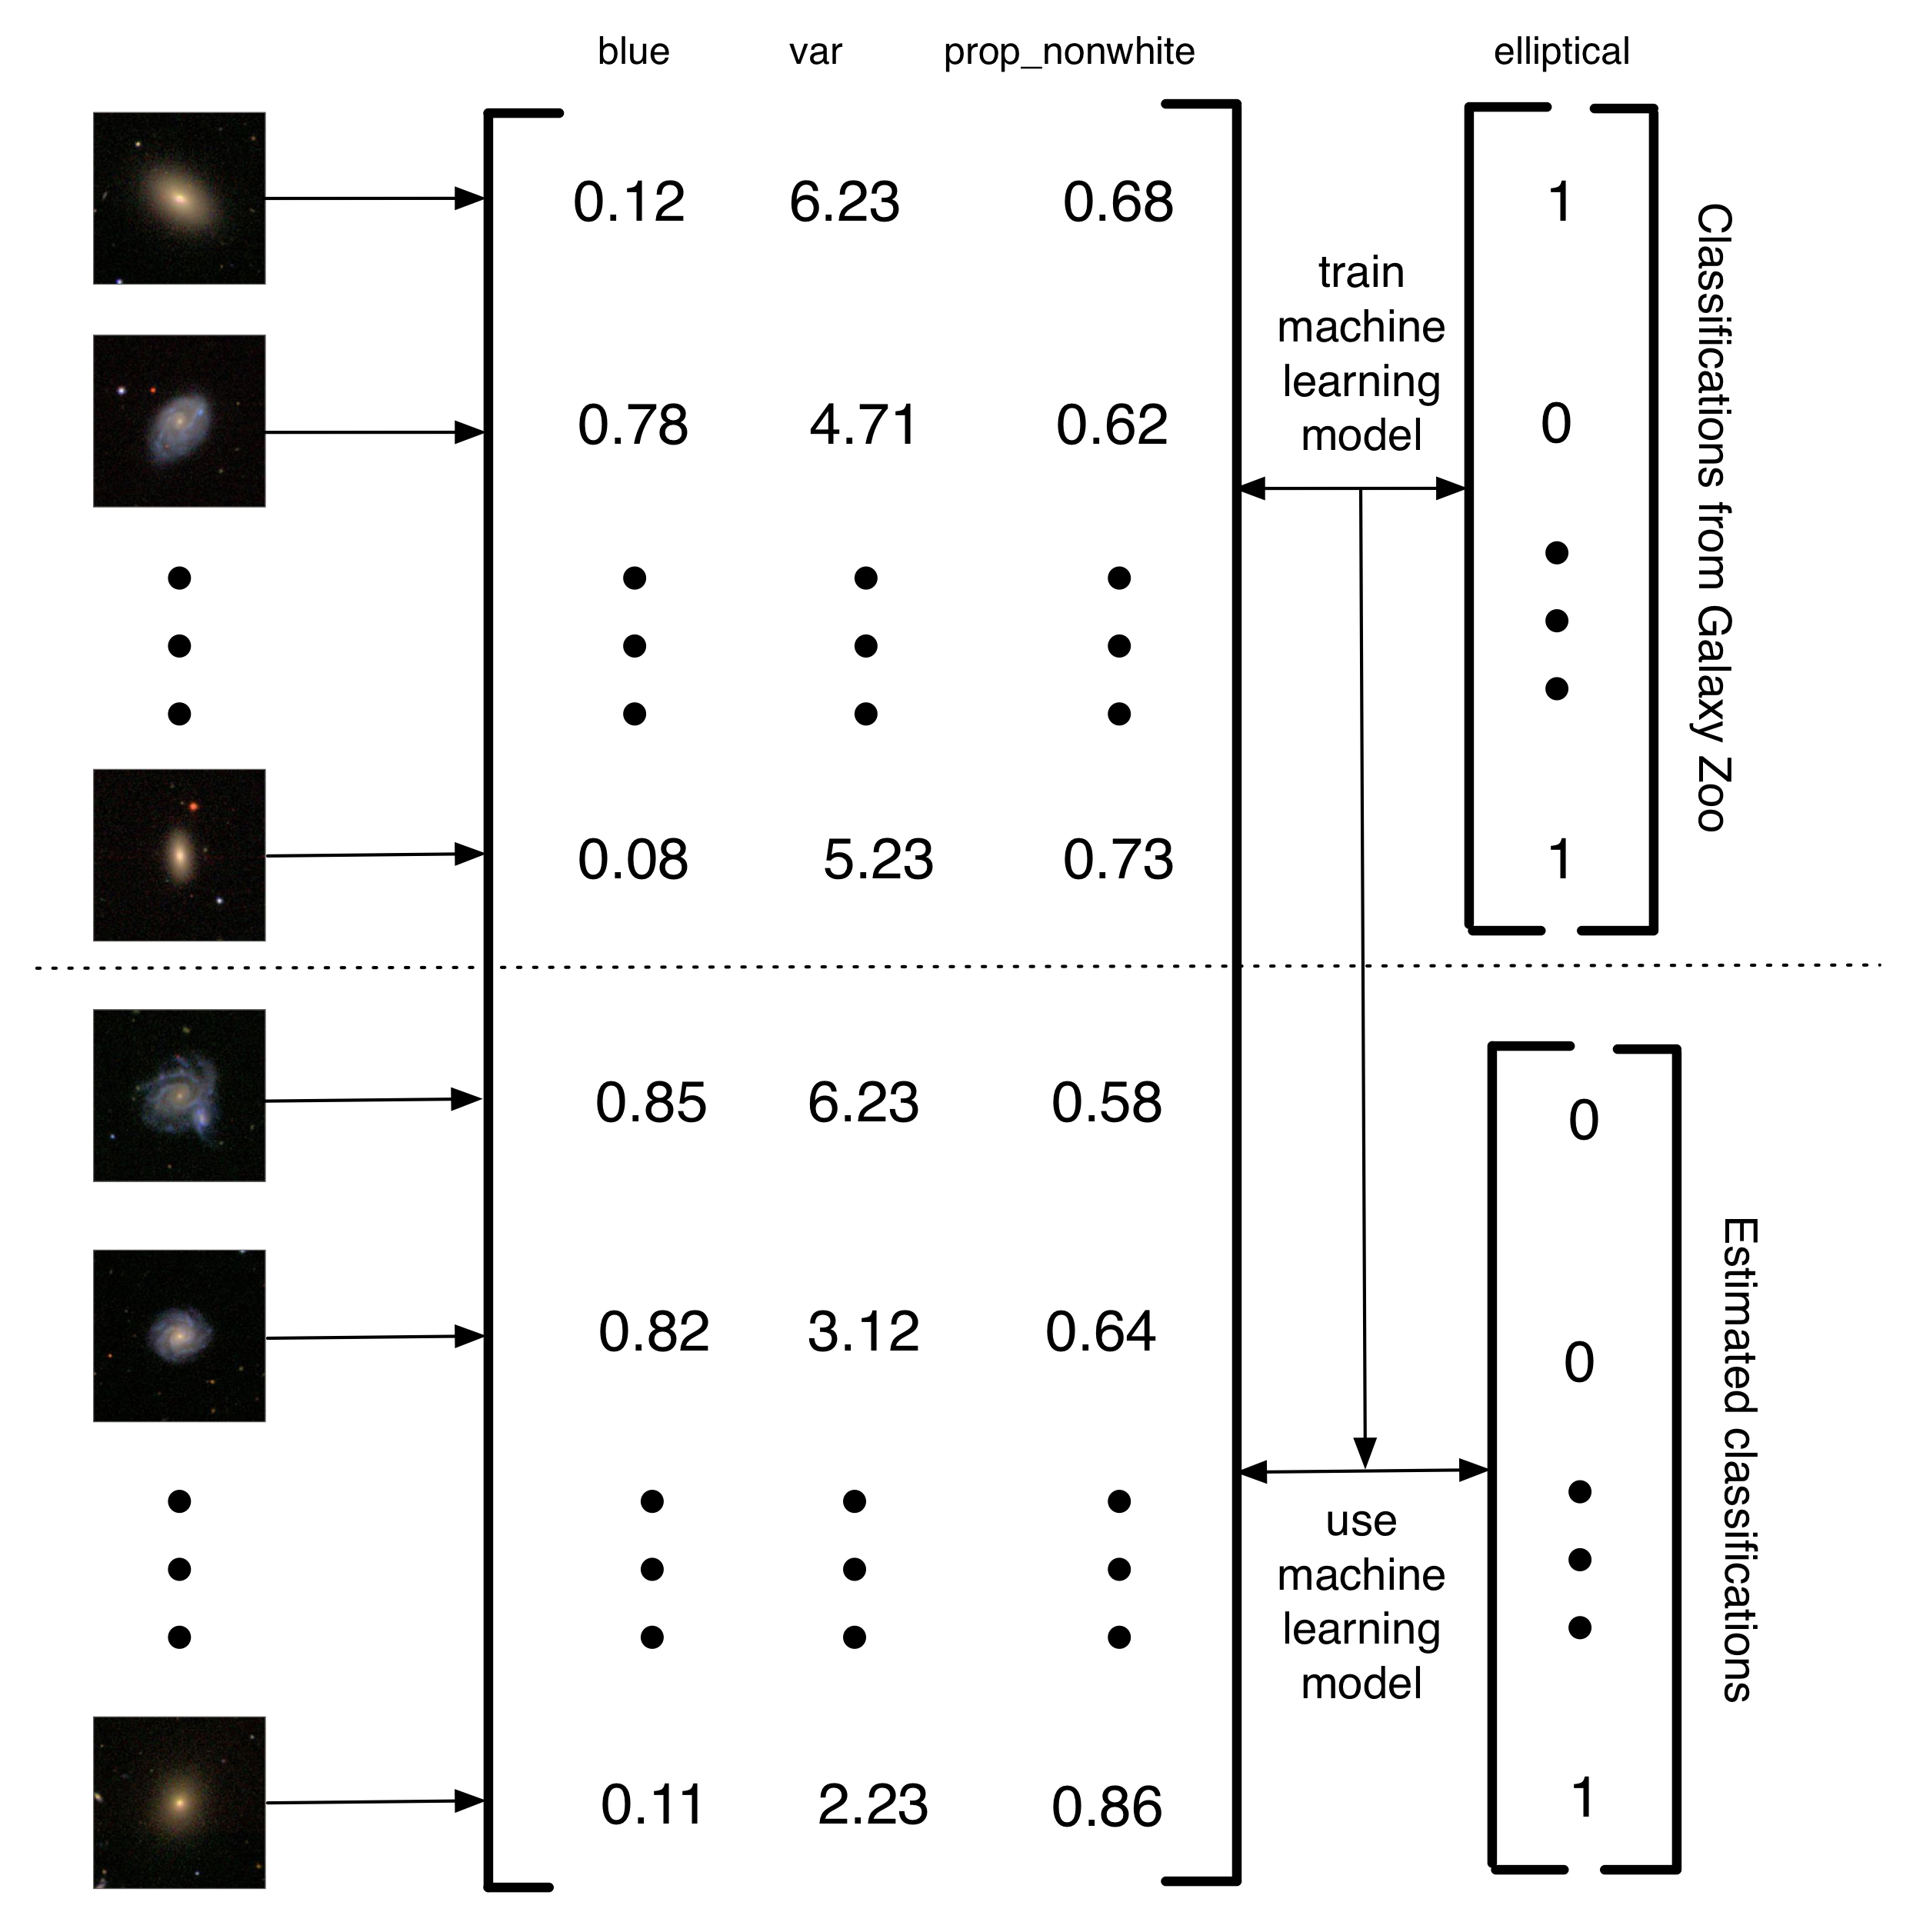 5.4 attēls: Vienkāršota apraksts, kā Banerji et al. (2010) izmantoja Galaxy Zoo klasifikācijas apmācīt mašīna mācību modeli darīt galaktiku klasifikāciju. Attēli galaktiku tika pārvērsts matricā funkcijām. Šajā vienkāršots piemērs ir trīs funkcijas (par summu no zila attēlā, dažādību spilgtumu pikseļi, un proporcija nav balto pikseļi). Tad, apakškopu attēliem, tad Galaxy Zoo uzlīmes tiek izmantotas, lai apmācītu mašīna mācīšanās modeli. Visbeidzot, mašīna mācīšanās tiek izmantota, lai novērtētu klasifikācijas atlikušajiem galaktiku. Es aicinu šāda veida projekta otrās paaudzes cilvēka skaitļošanas projekts, jo, nevis cilvēkiem atrisināt problēmas, tie ir cilvēki veidot datu kopumu, ko var izmantot, lai apmācītu datoru, lai atrisinātu problēmu. Šī datora palīdzību pieejas priekšrocība ir tā, ka tas ļauj jums rīkoties būtībā bezgalīgu datu apjomu, izmantojot tikai ierobežots daudzums cilvēka pūles.